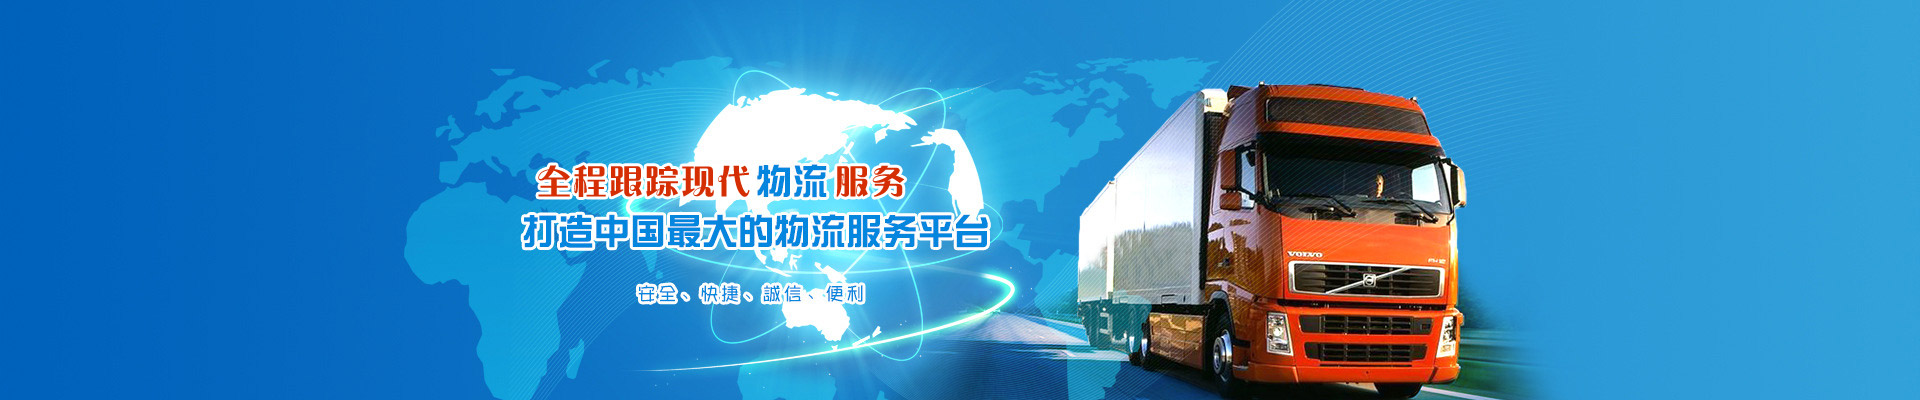 东莞惠州到甘肃物流公司 提供综合物流服务